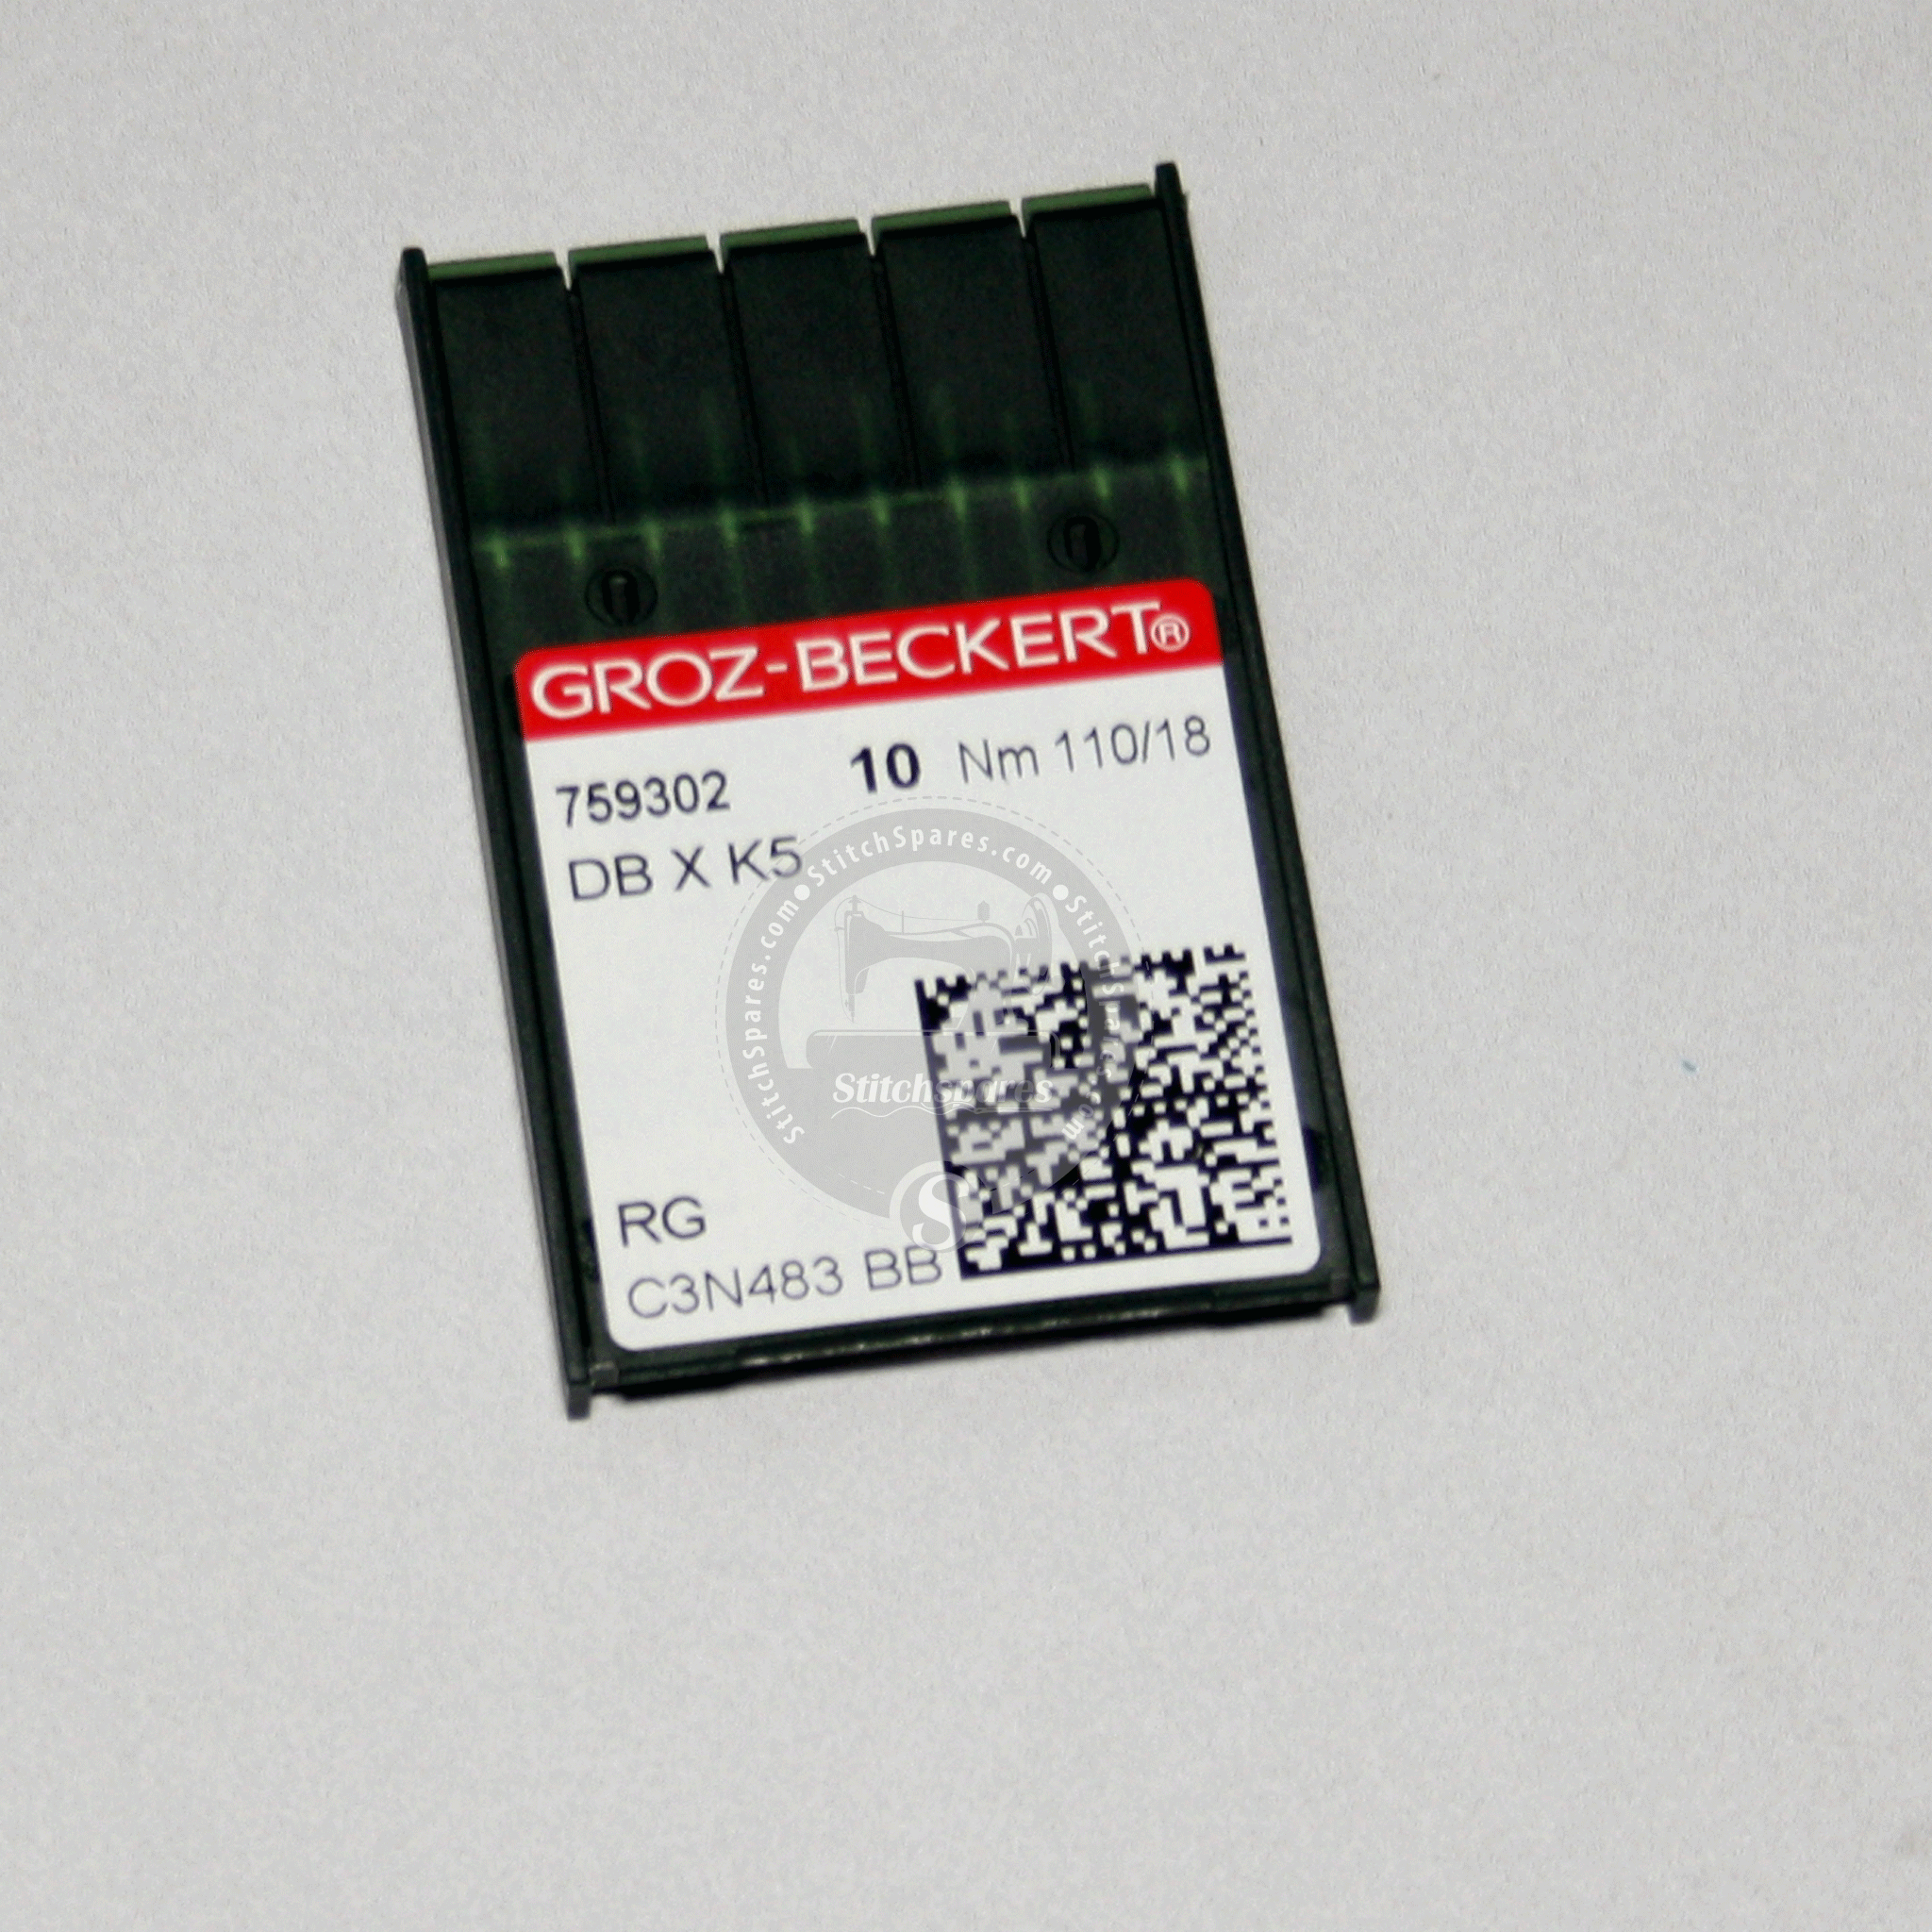 DBXK5 11018 ग्रोज़ बेकरर्ट सिलाई मशीन सुई